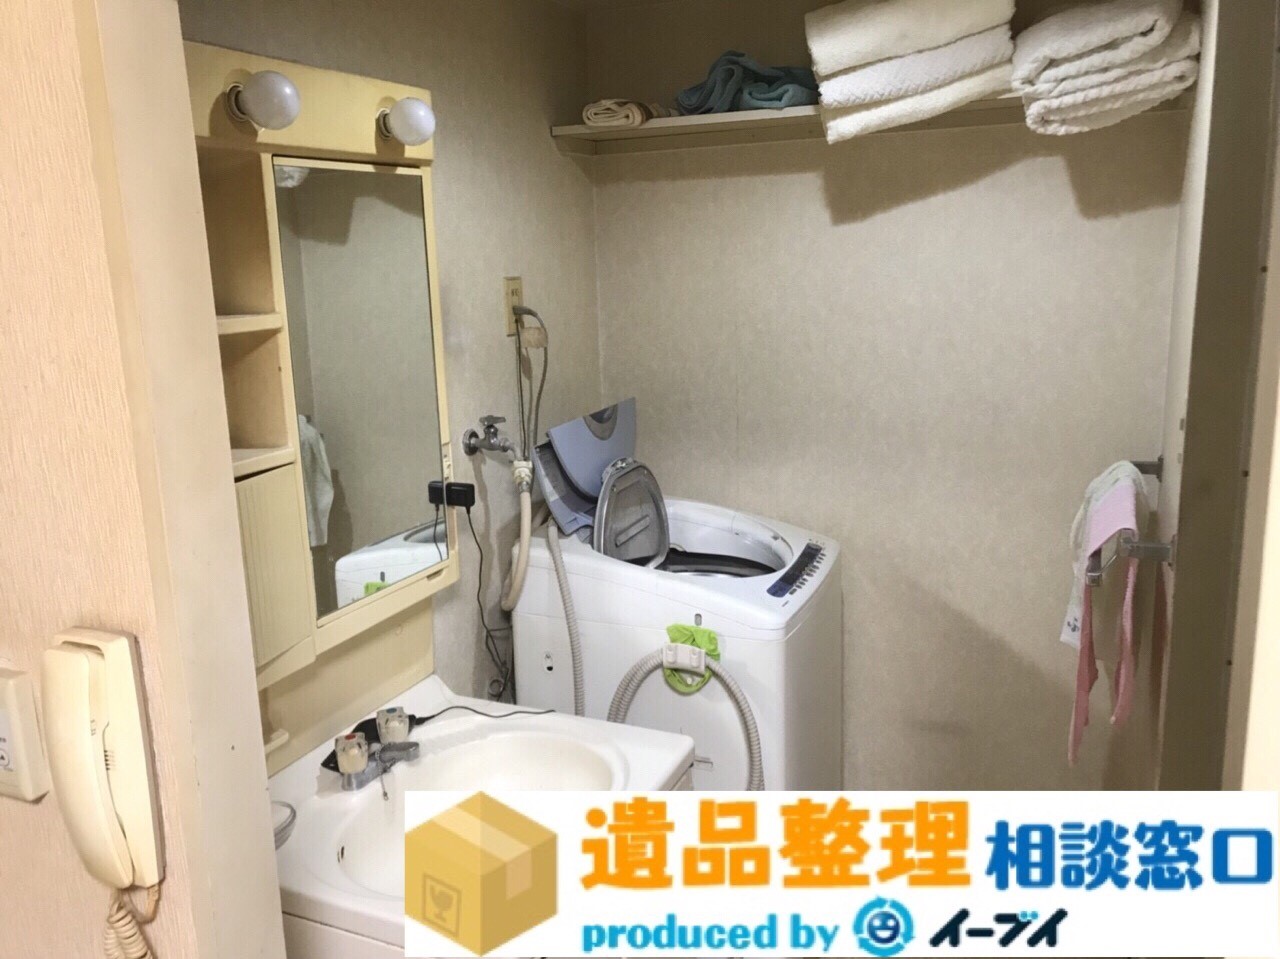 大阪府羽曳野市で遺品整理の作業の公開（押し入れや洗面台）のアイキャッチ